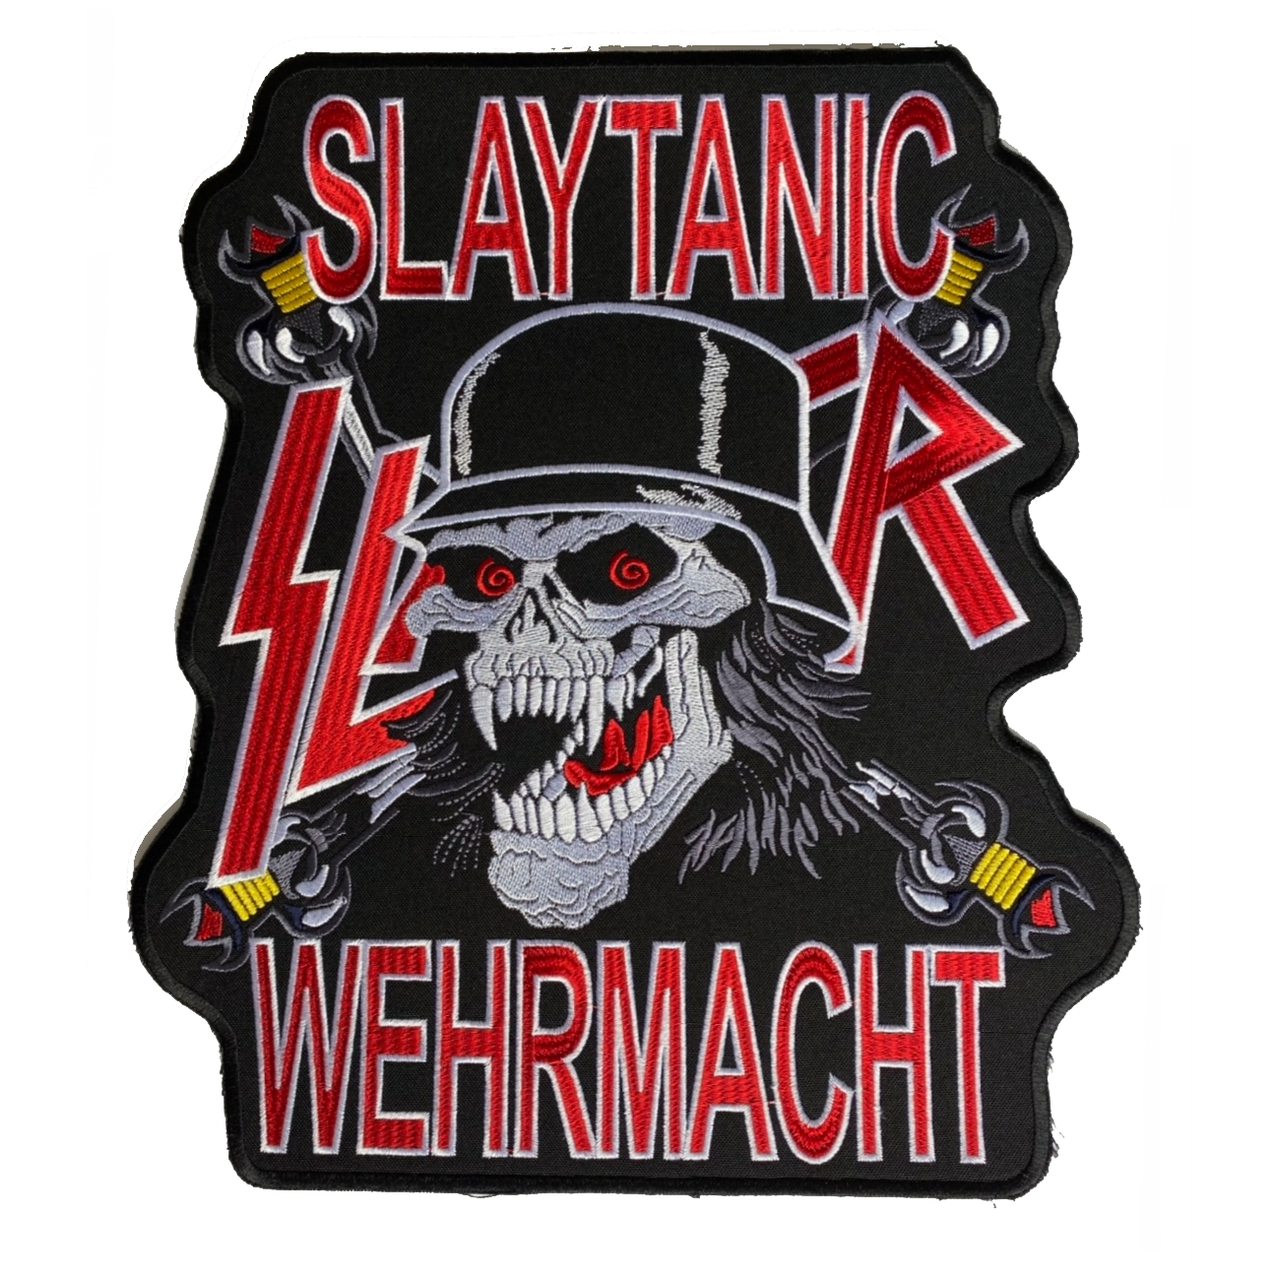 Slayer Slaytanic Wehrmacht Back Patch